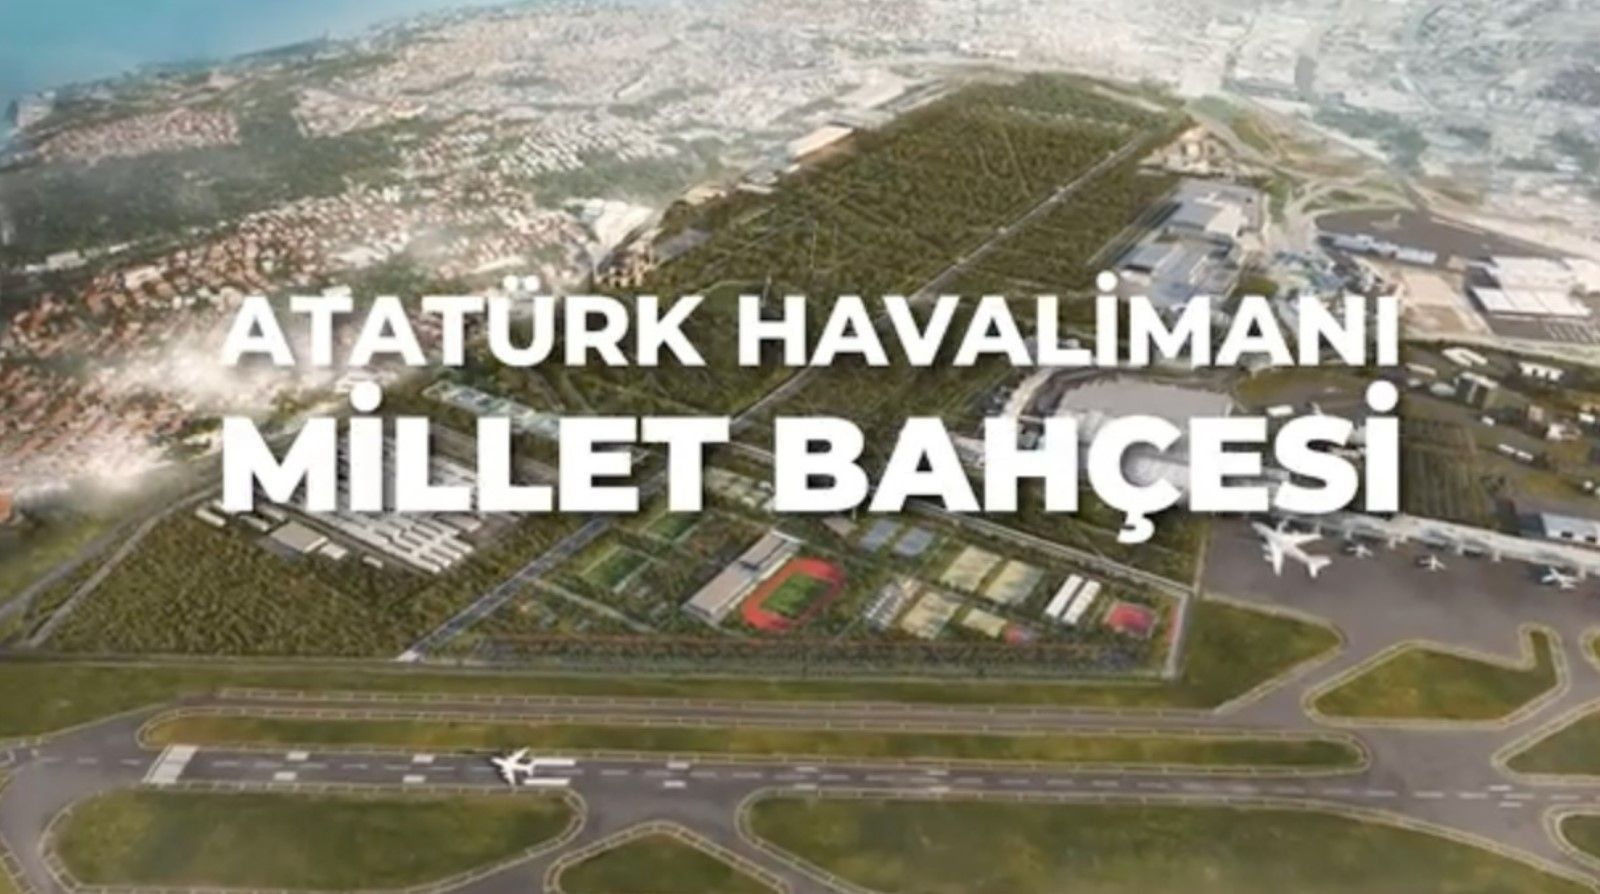 Atatürk Havalimanı'na yapılacak Millet Bahçesi'nin ismi değişecek mi?